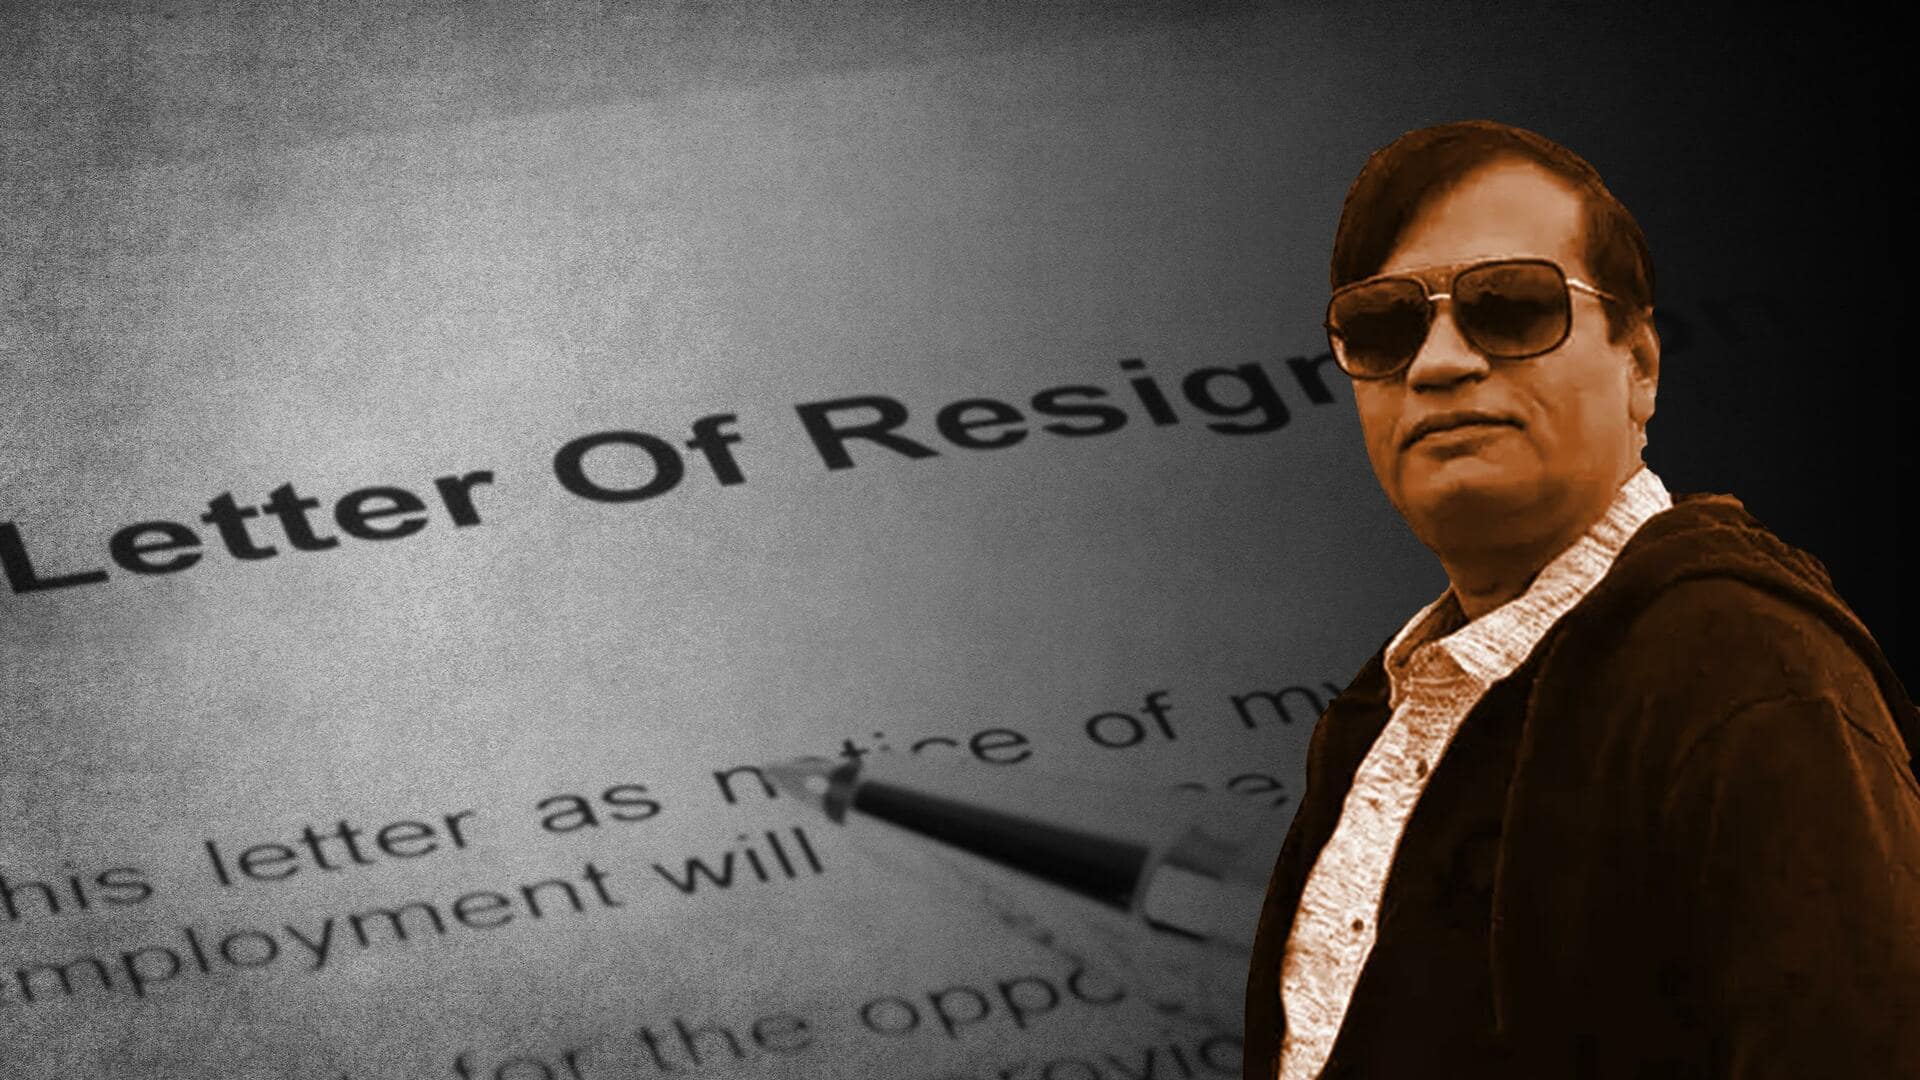 ठग किरण पटेल मामले में गुजरात सरकार के वरिष्ठ अधिकारी ने दिया पद से इस्तीफा 